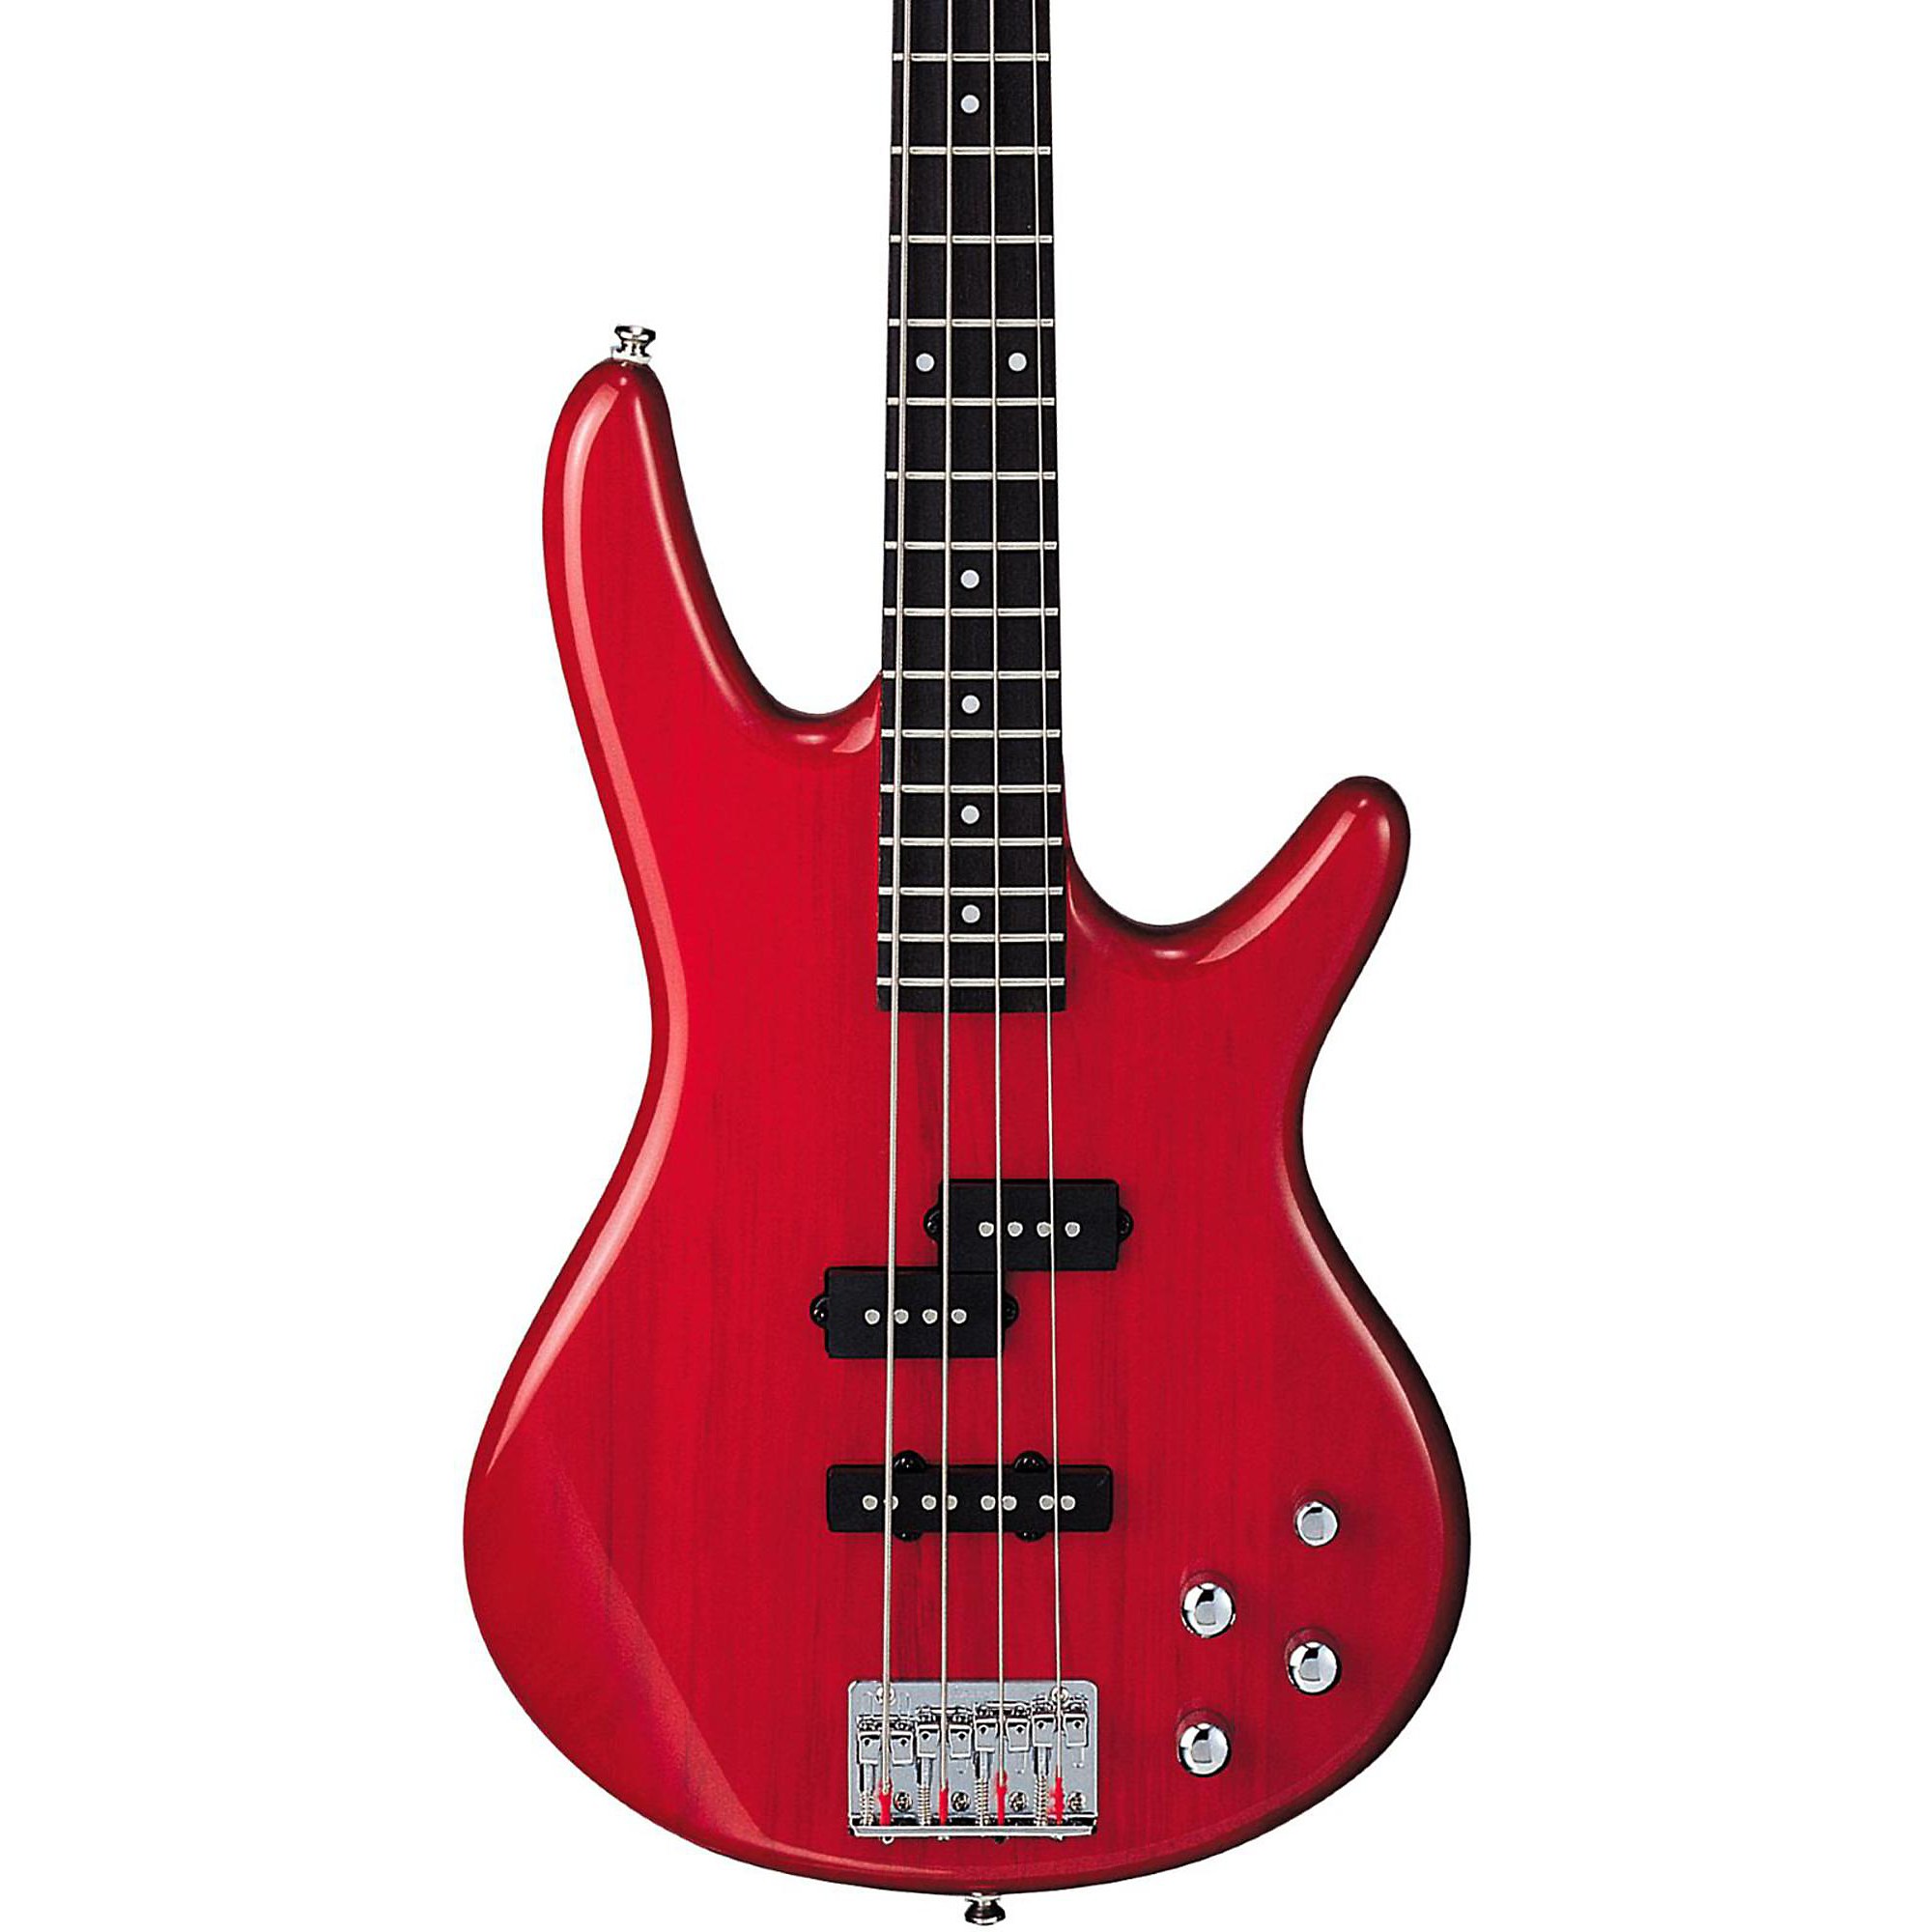 Ibanez GSR200 4-струнная электробас-гитара, прозрачный красный